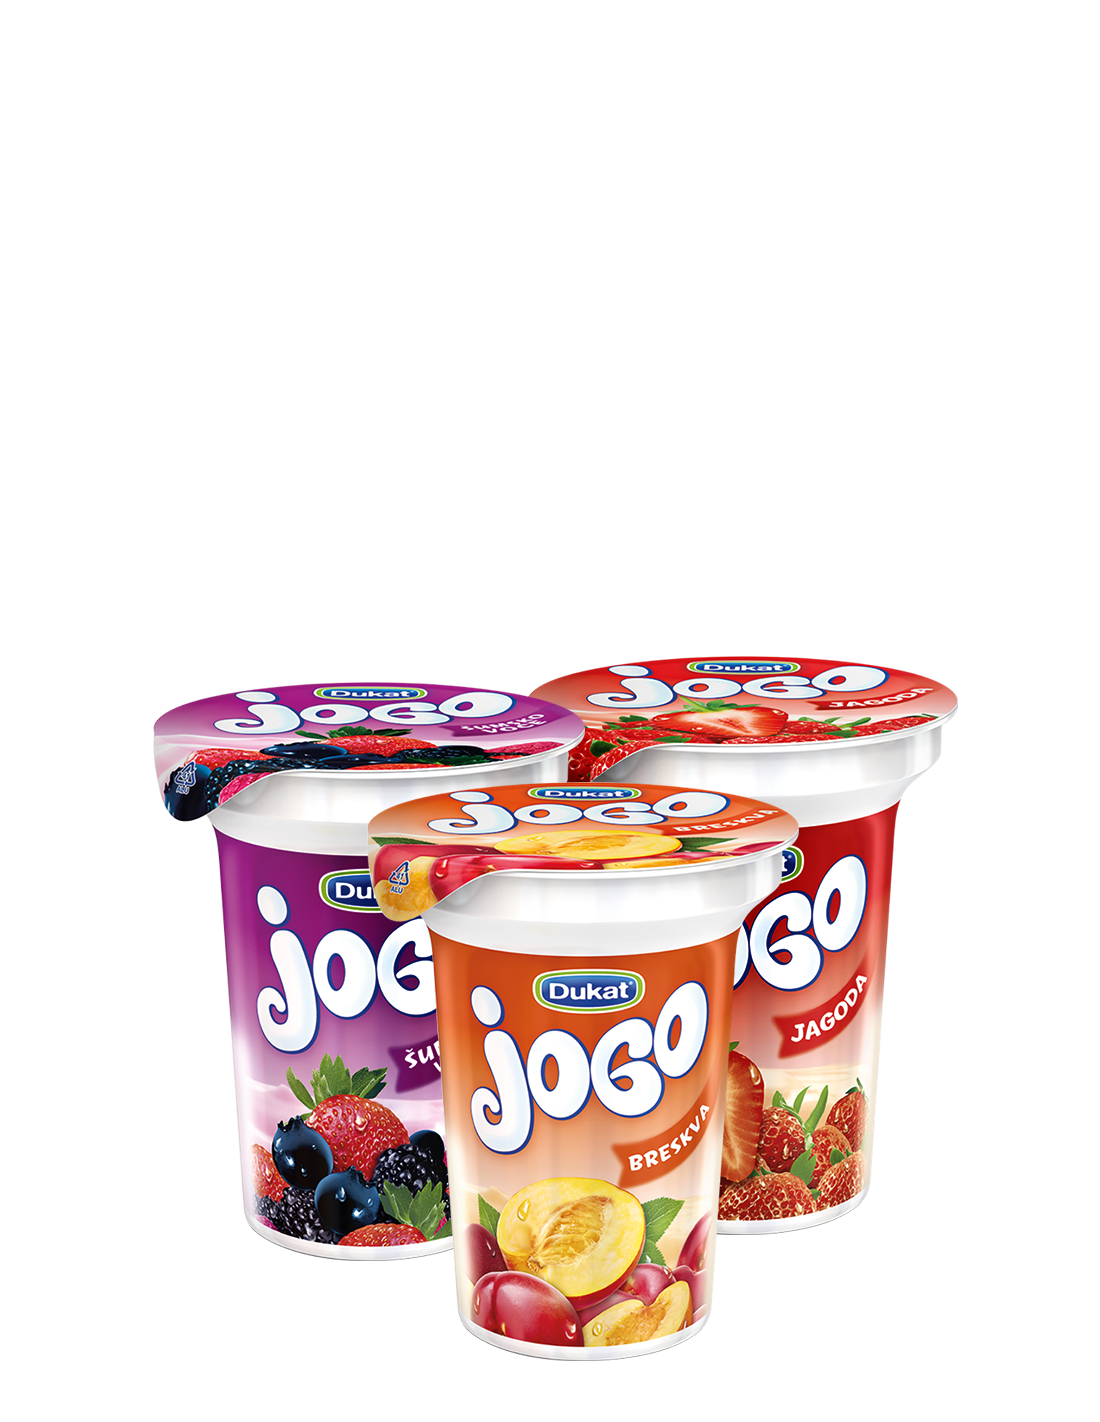 Jogo - termizirani voćni jogurt, 150 g